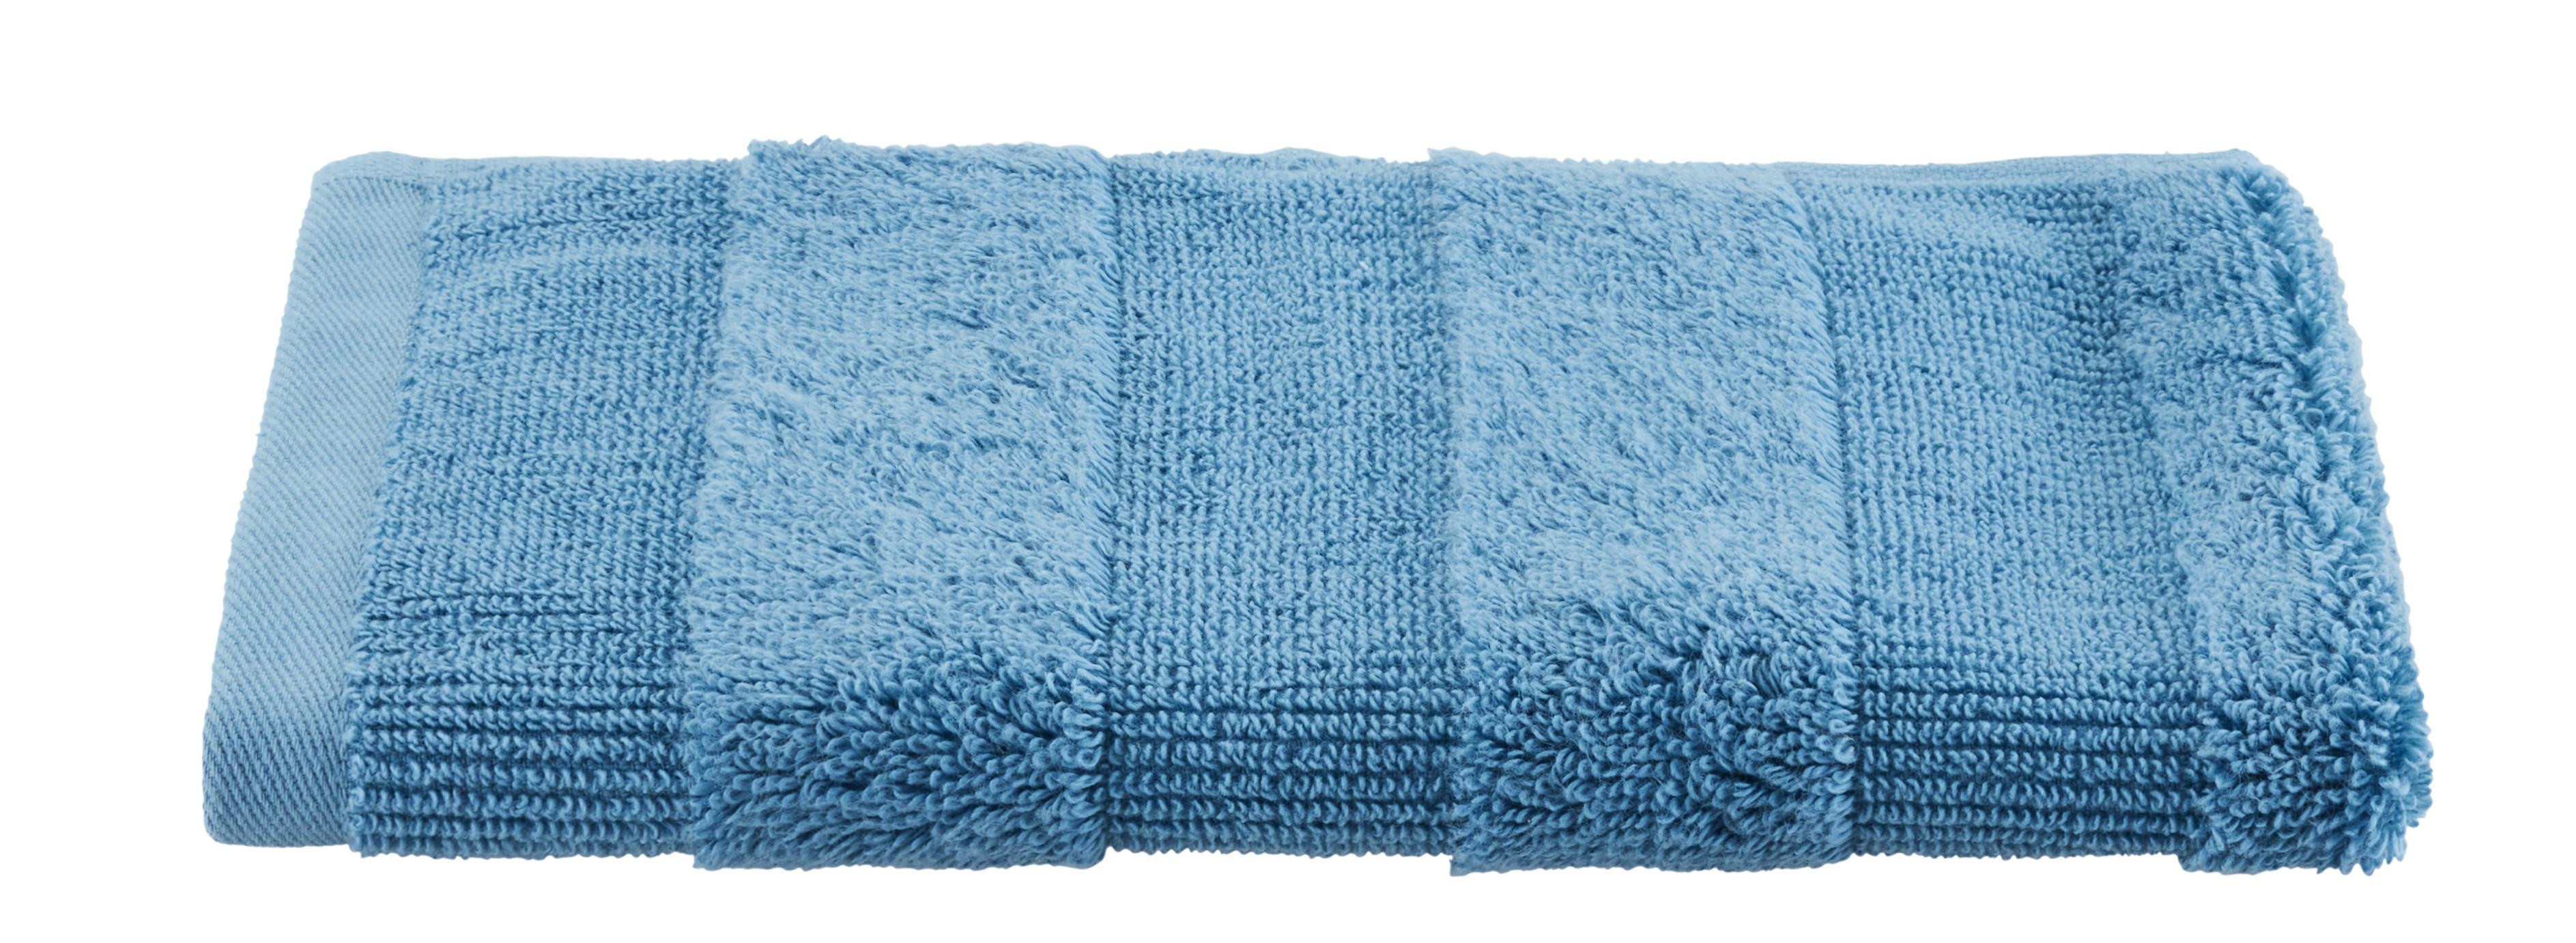 Ručník Pro Hosty Chris, 30/50cm, Modrá - modrá, textil (30/50cm) - Premium Living